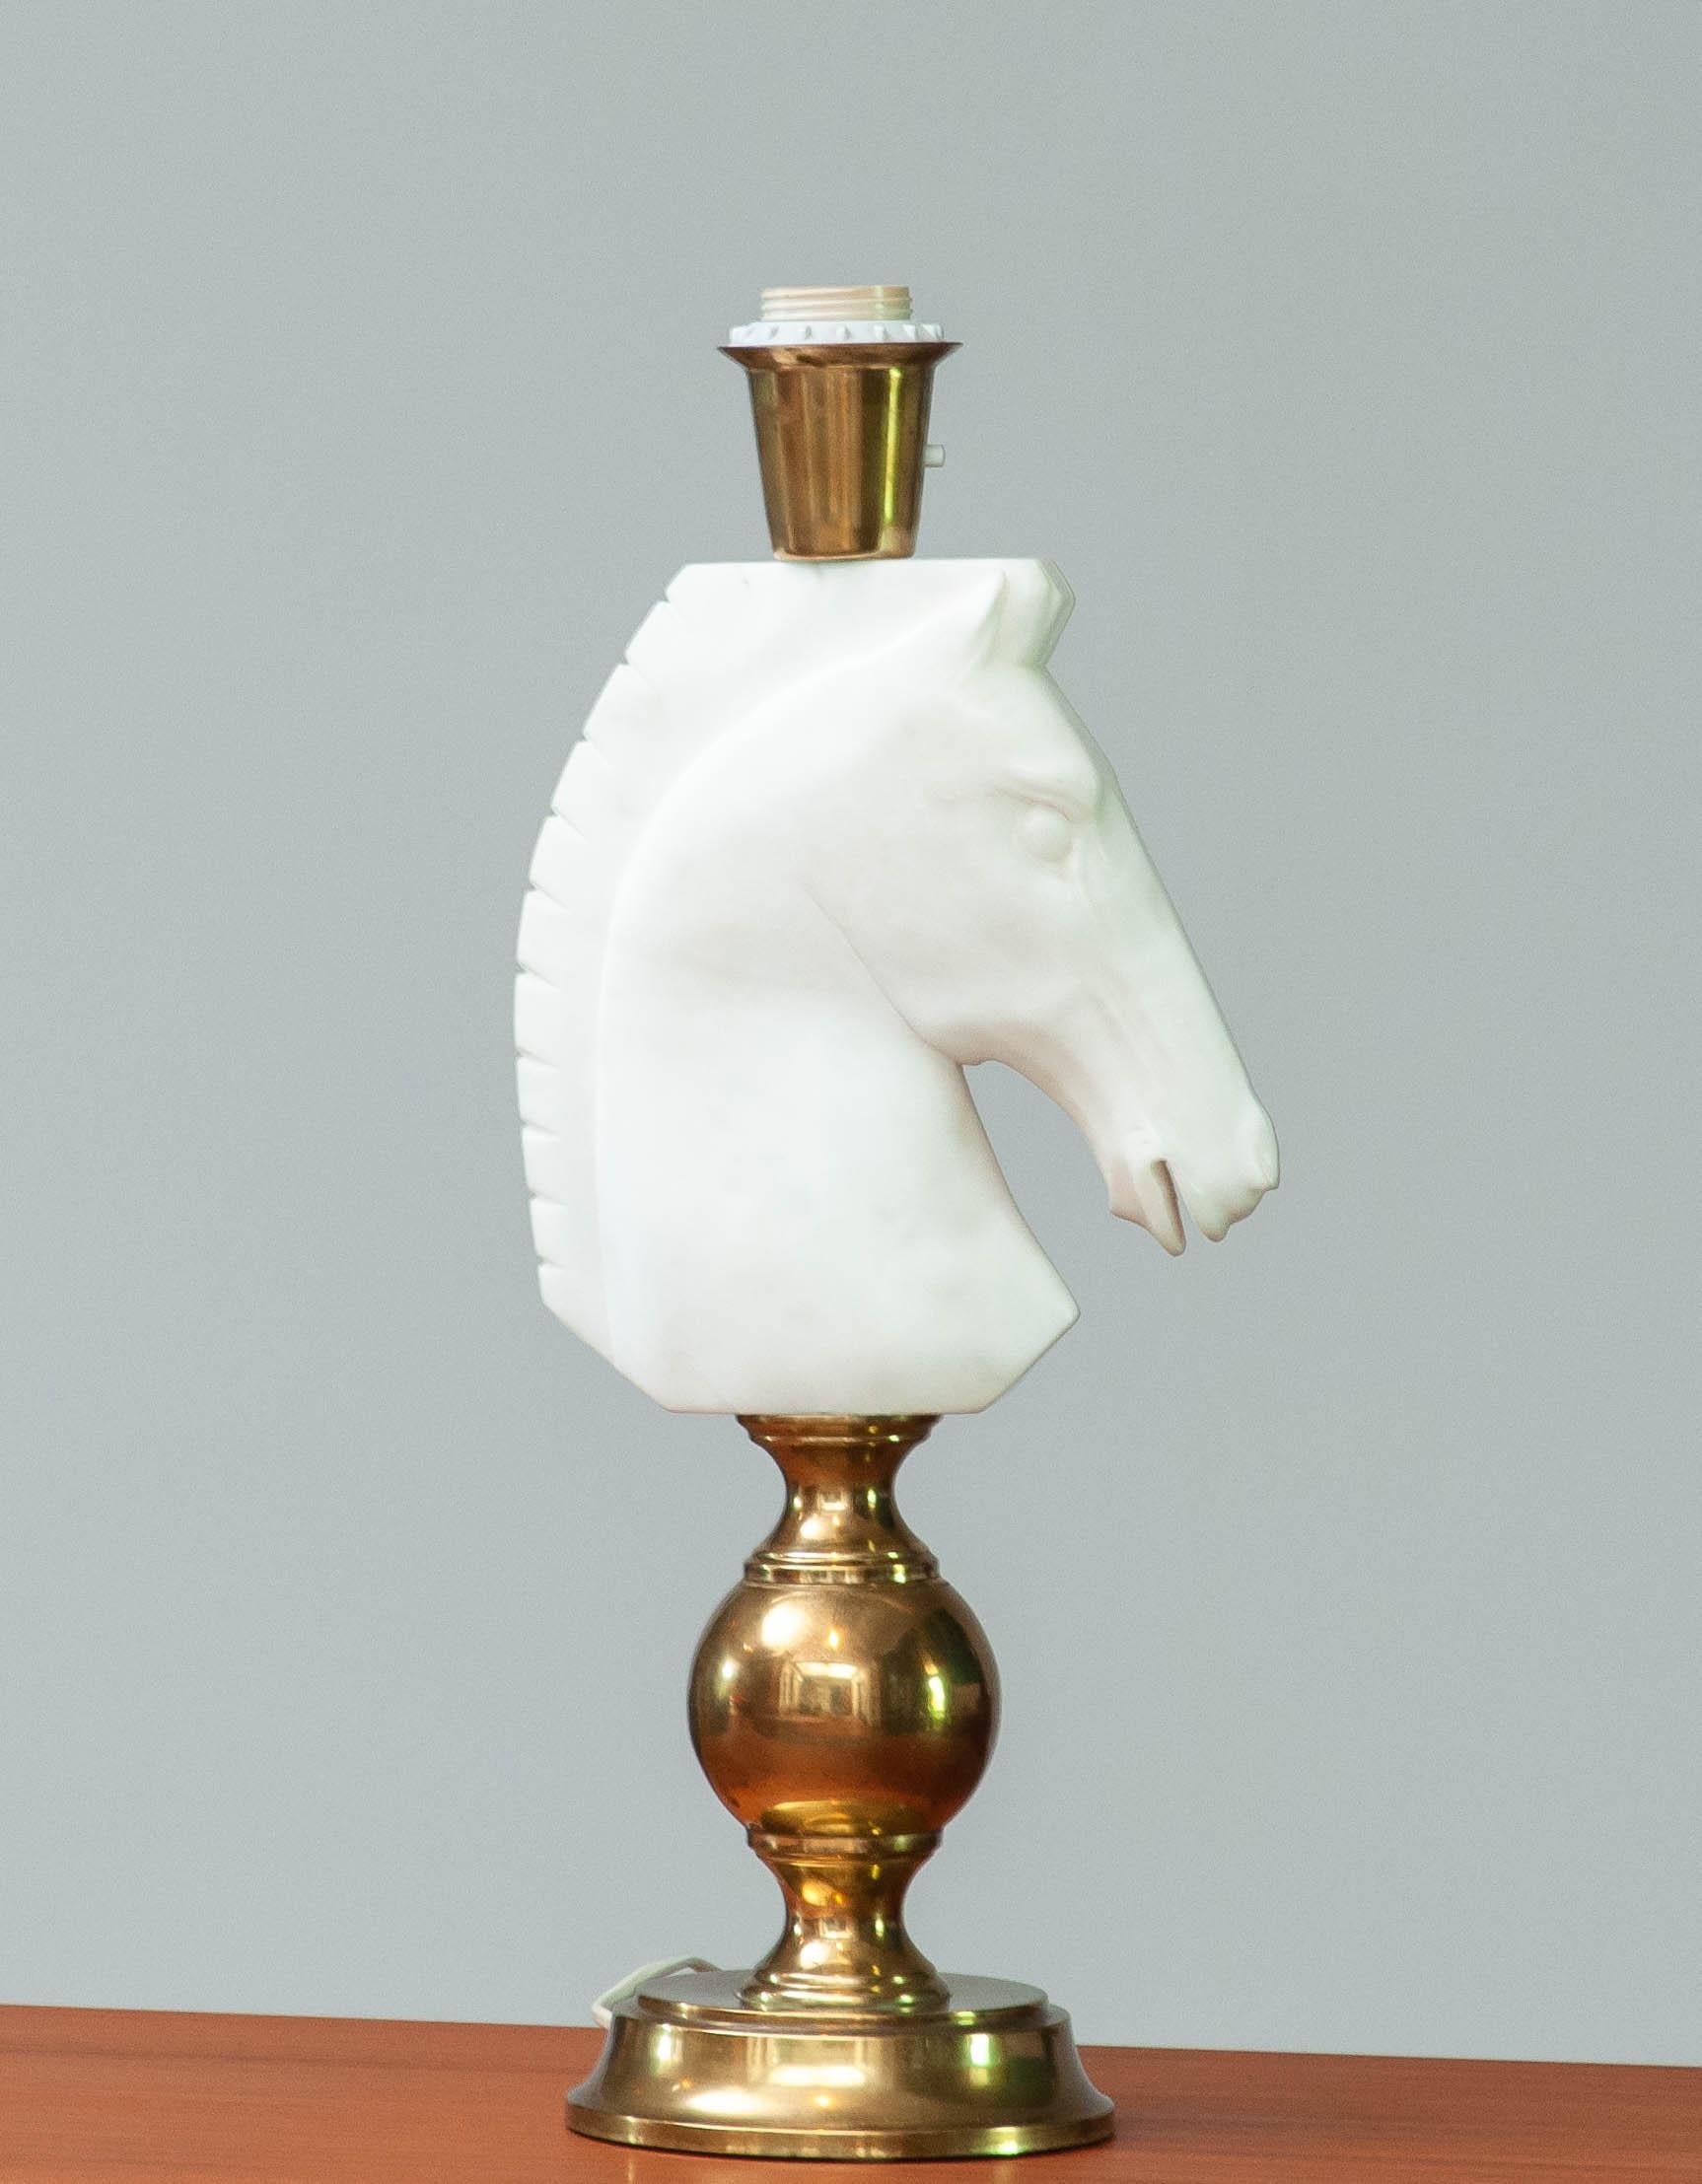 Belle et absolument rare lampe de table en laiton et belle tête de cheval italienne en albâtre taillée à la main. Ces chefs-d'œuvre, combinés à une belle teinte, créeront une ambiance fabuleuse dans votre maison.
Techniquement, la lampe est en bon